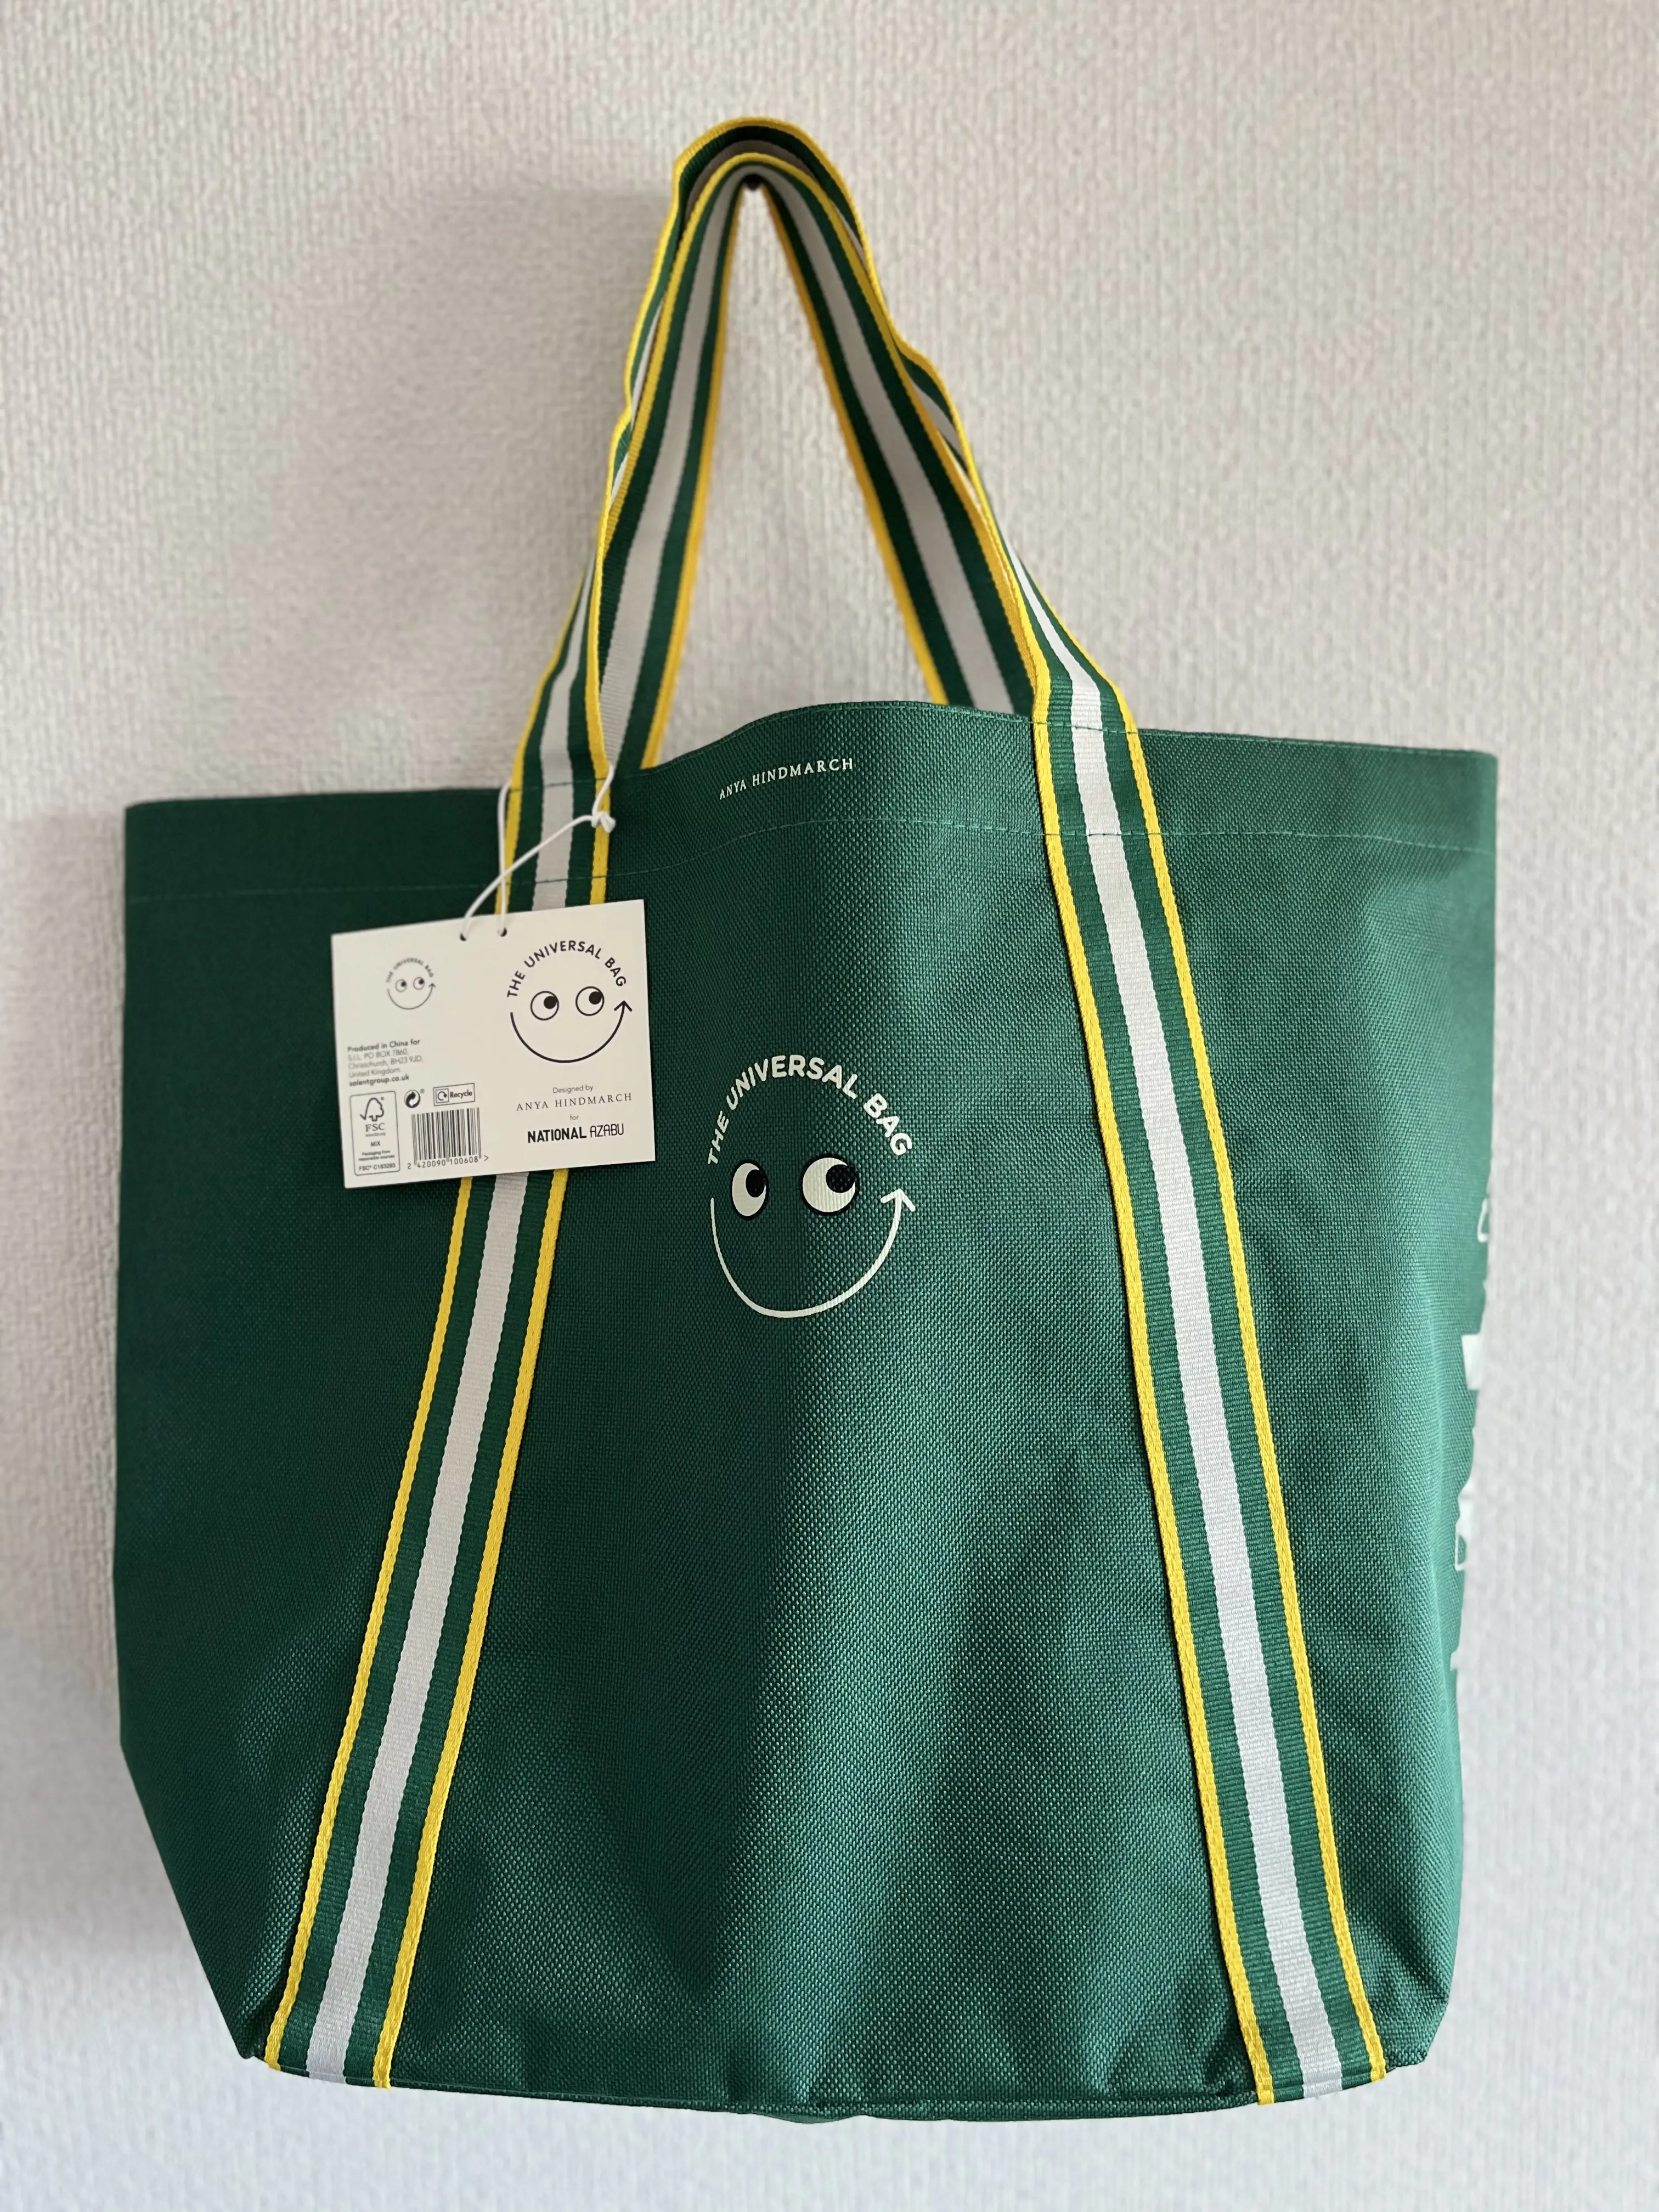 ナショナル麻布 アニヤ・ハインドマーチコラボバッグ「Universal Bag」-